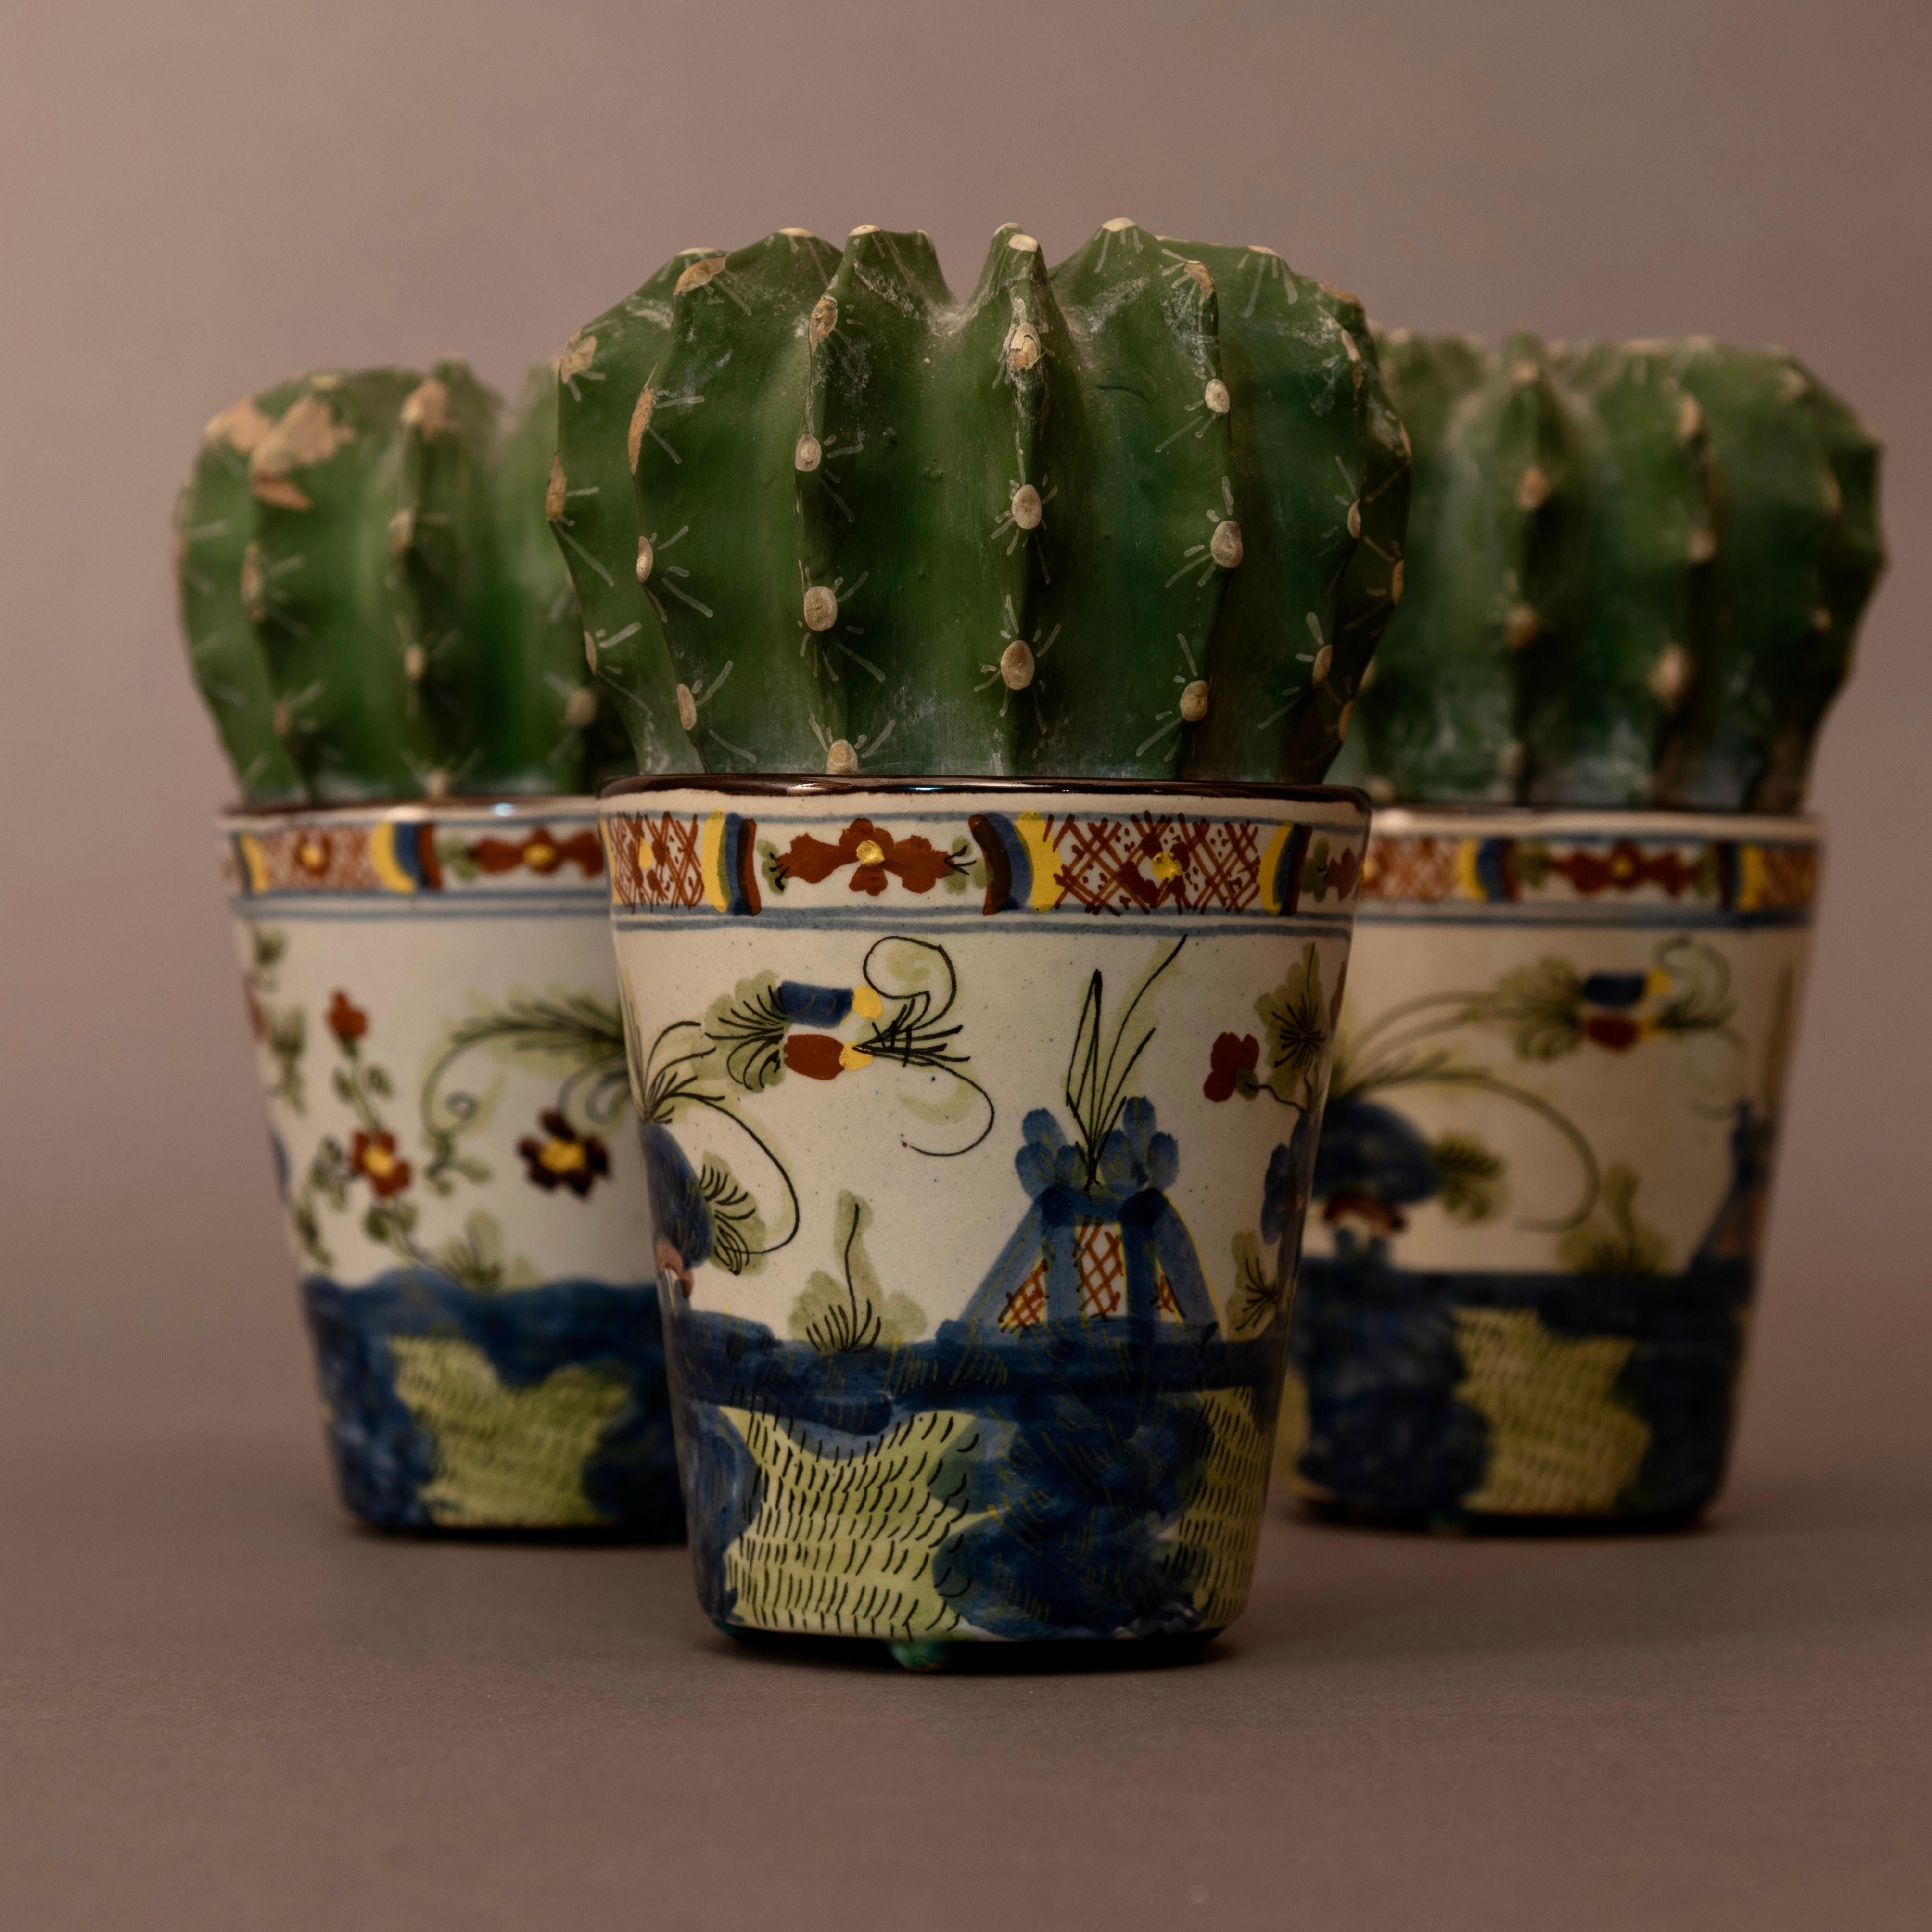 Bel ensemble de céramiques de Faenza des années 1950.
Ils représentent un sujet aussi original qu'intéressant : des plantes de cactus placées dans un vase en céramique !
Ces petits chefs-d'œuvre sont l'œuvre d'une importante usine de céramique